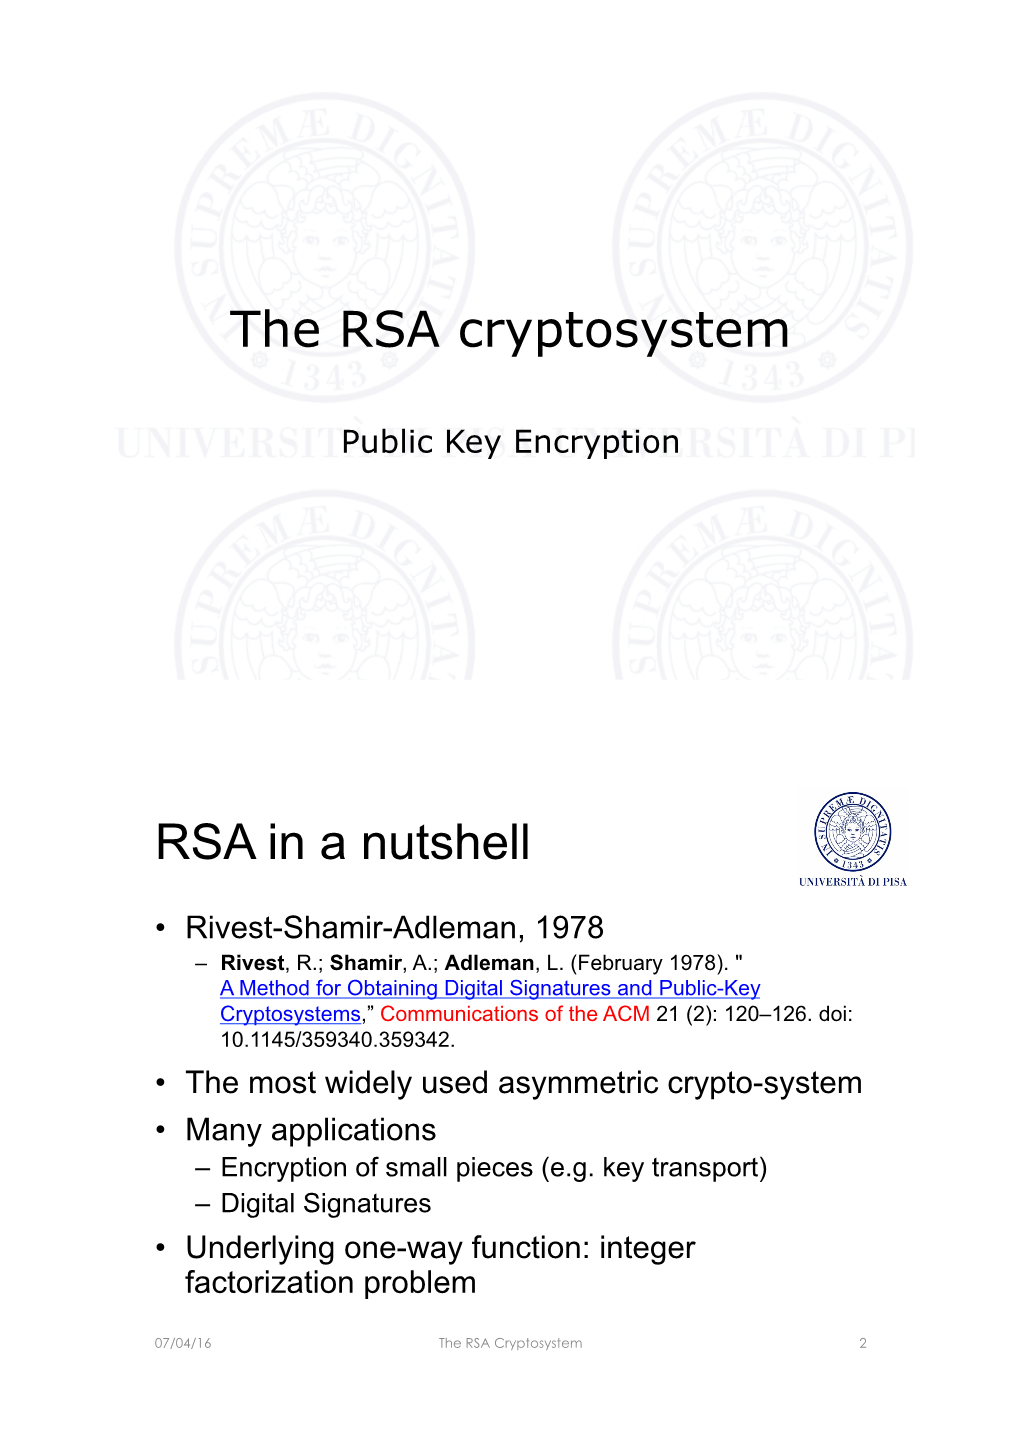 The RSA Cryptosystem RSA in a Nutshell